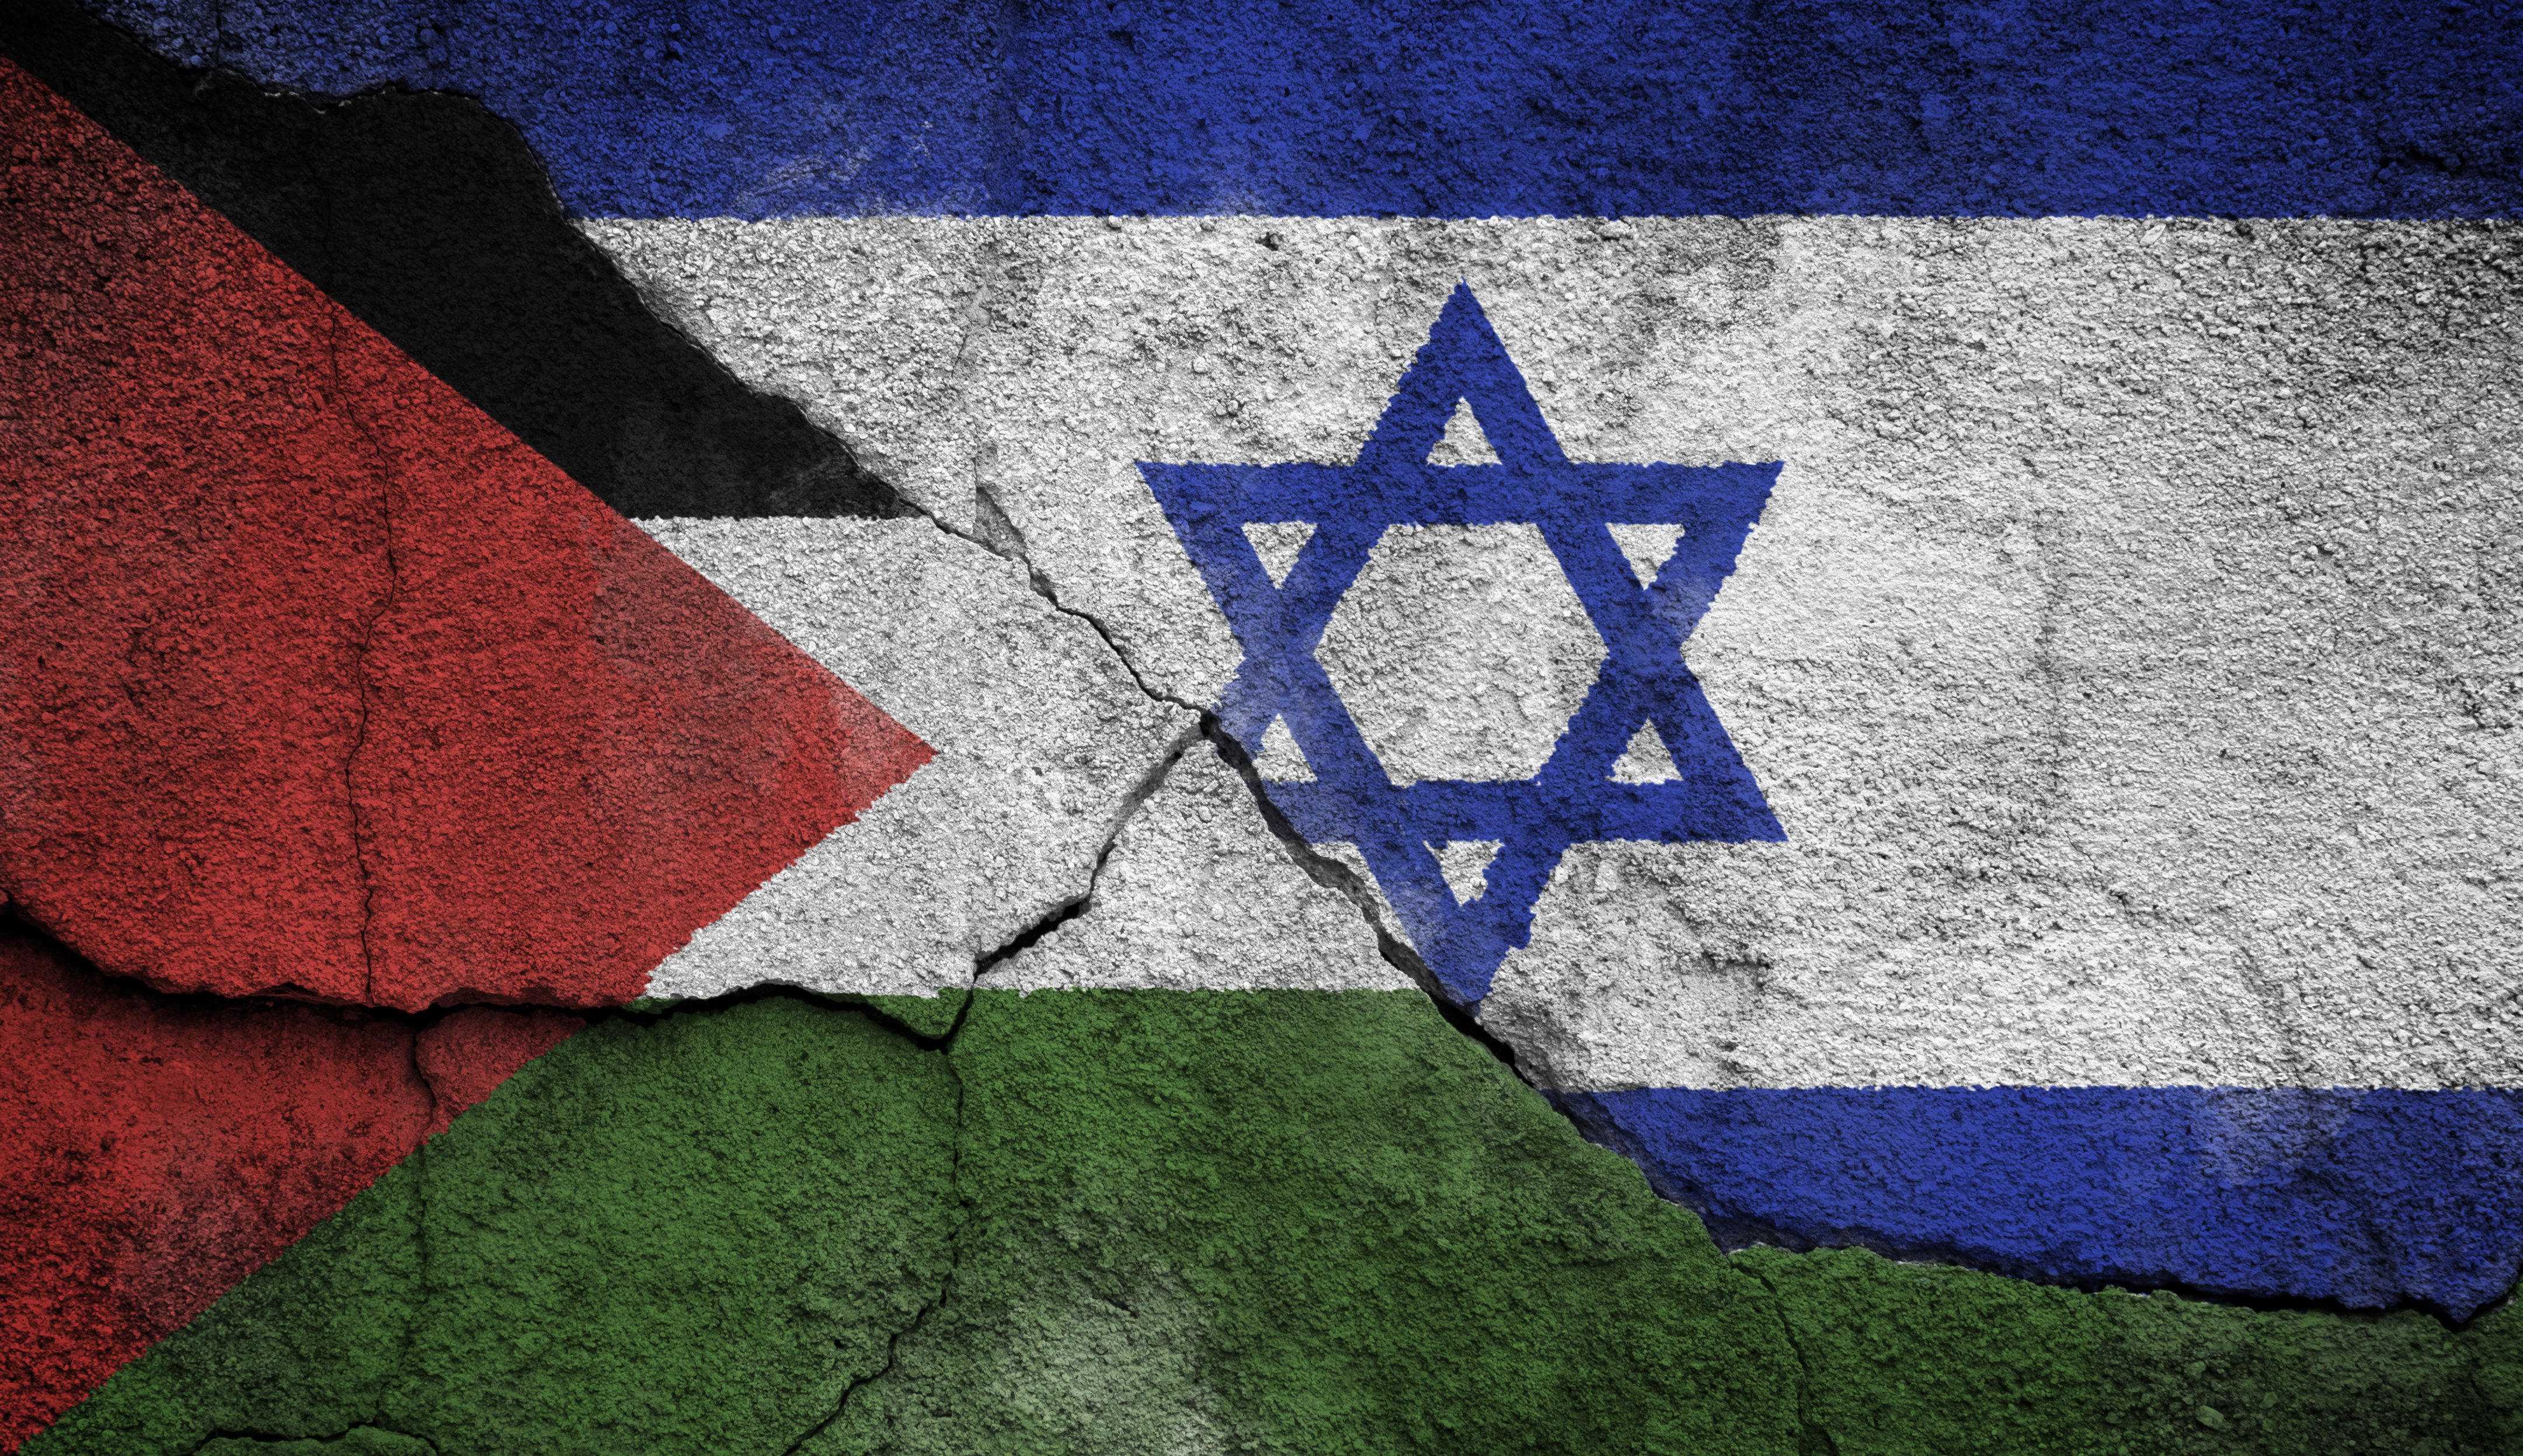 Israelische und palästinensische Flagge auf einer Betonwand, Flagge sind durch Riss getrennt.